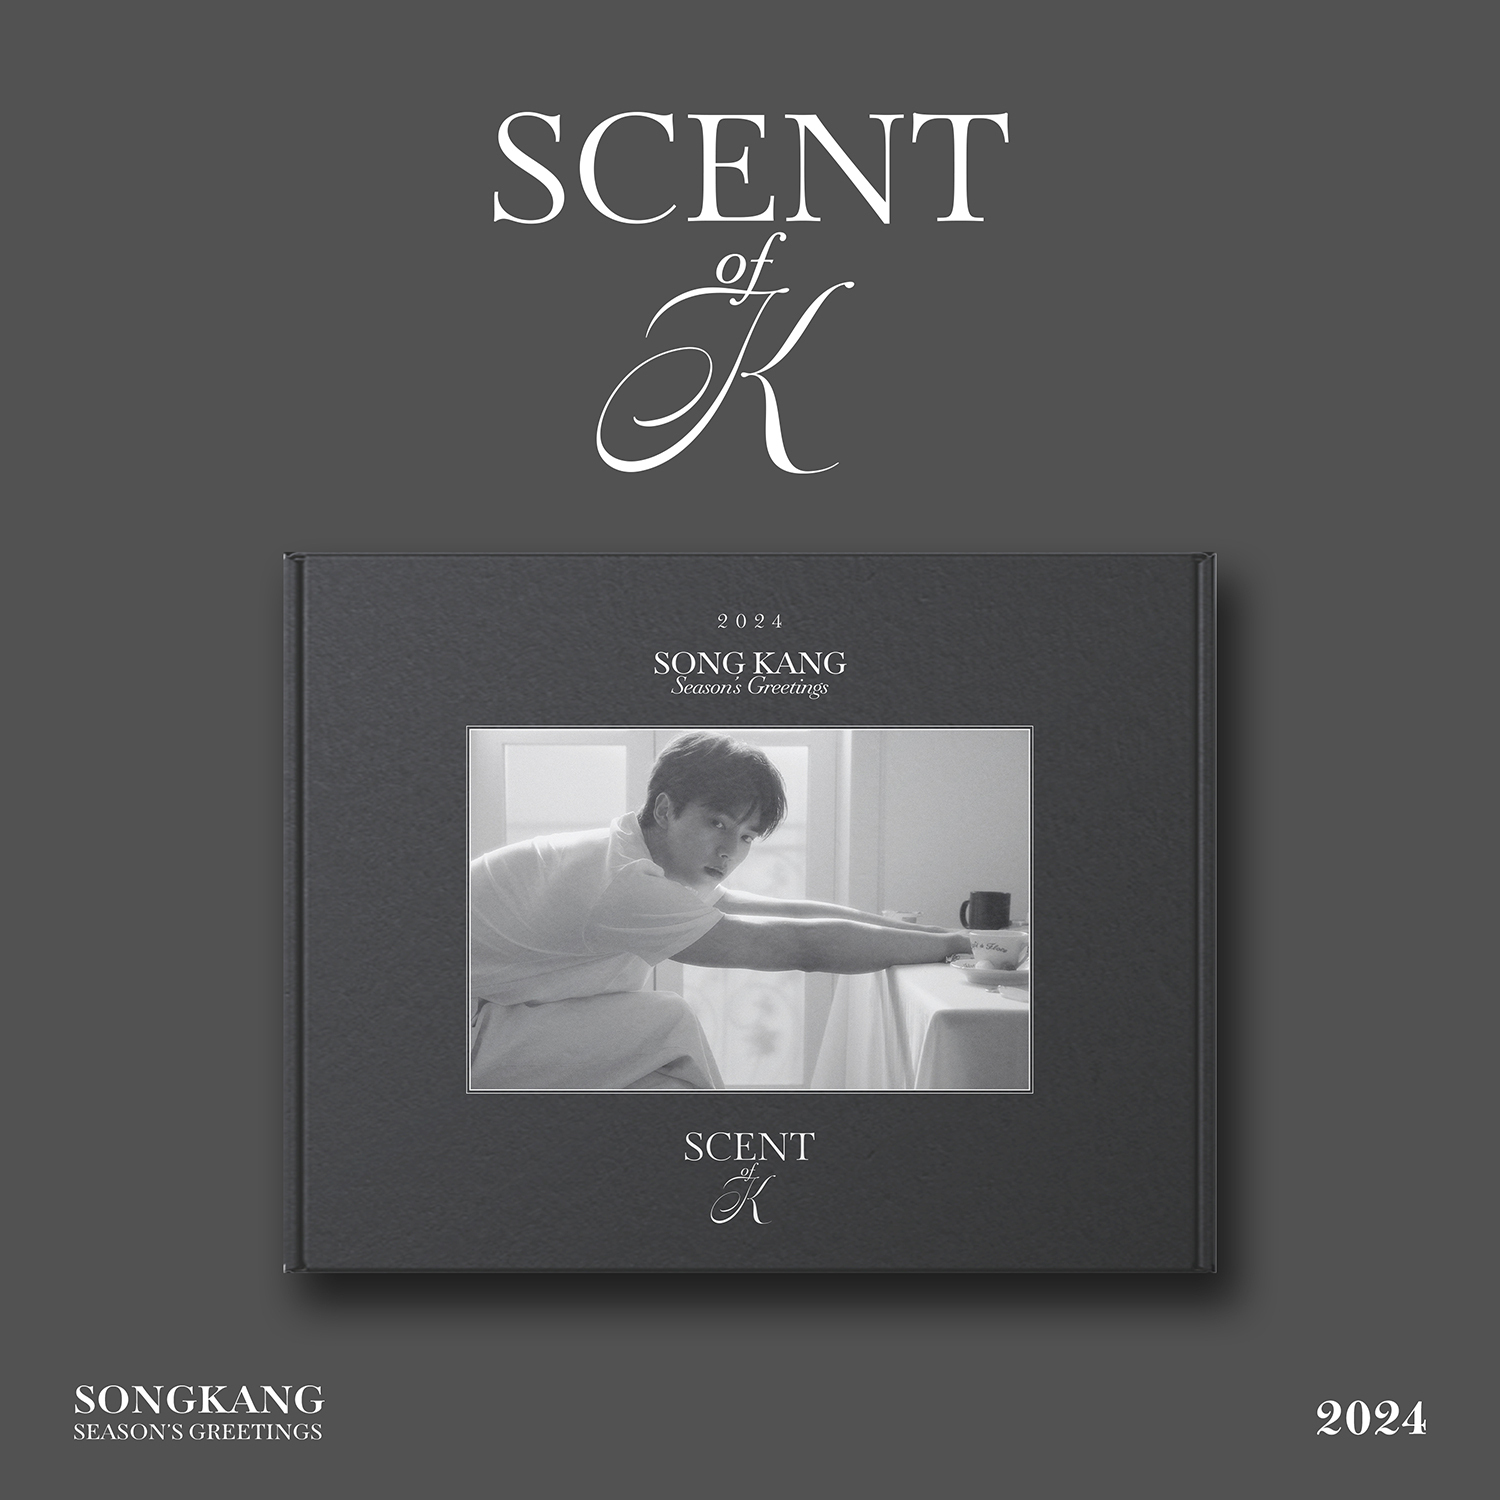 ソンガン SCENT 2024シーグリ - K-POP・アジア